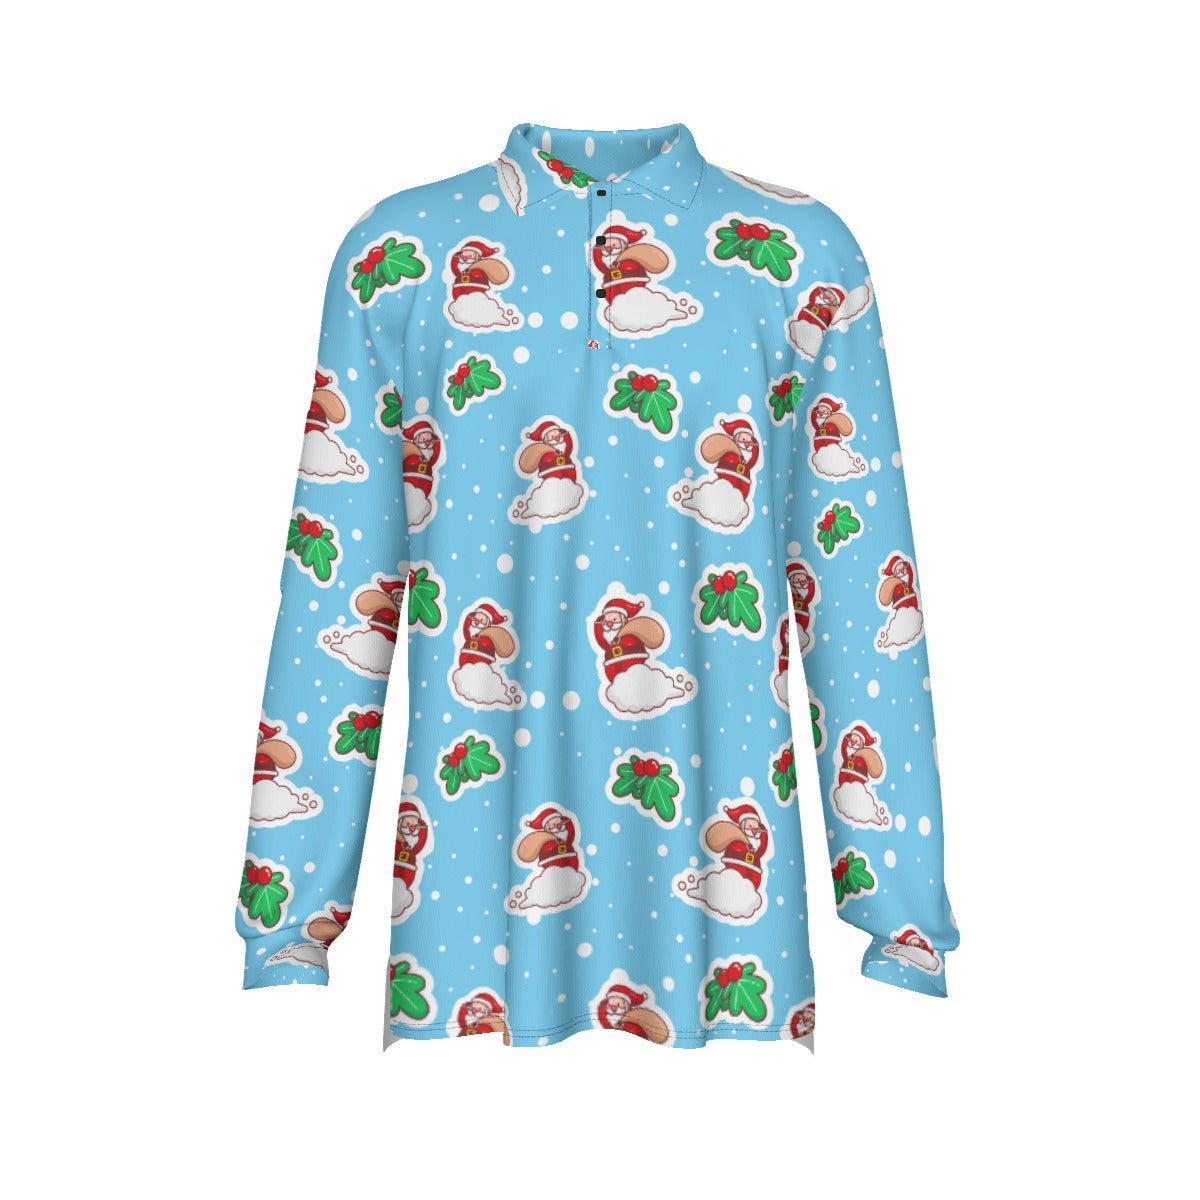 Men's Long Sleeve Christmas Polo Shirt - Santa Cloud - Festive Style